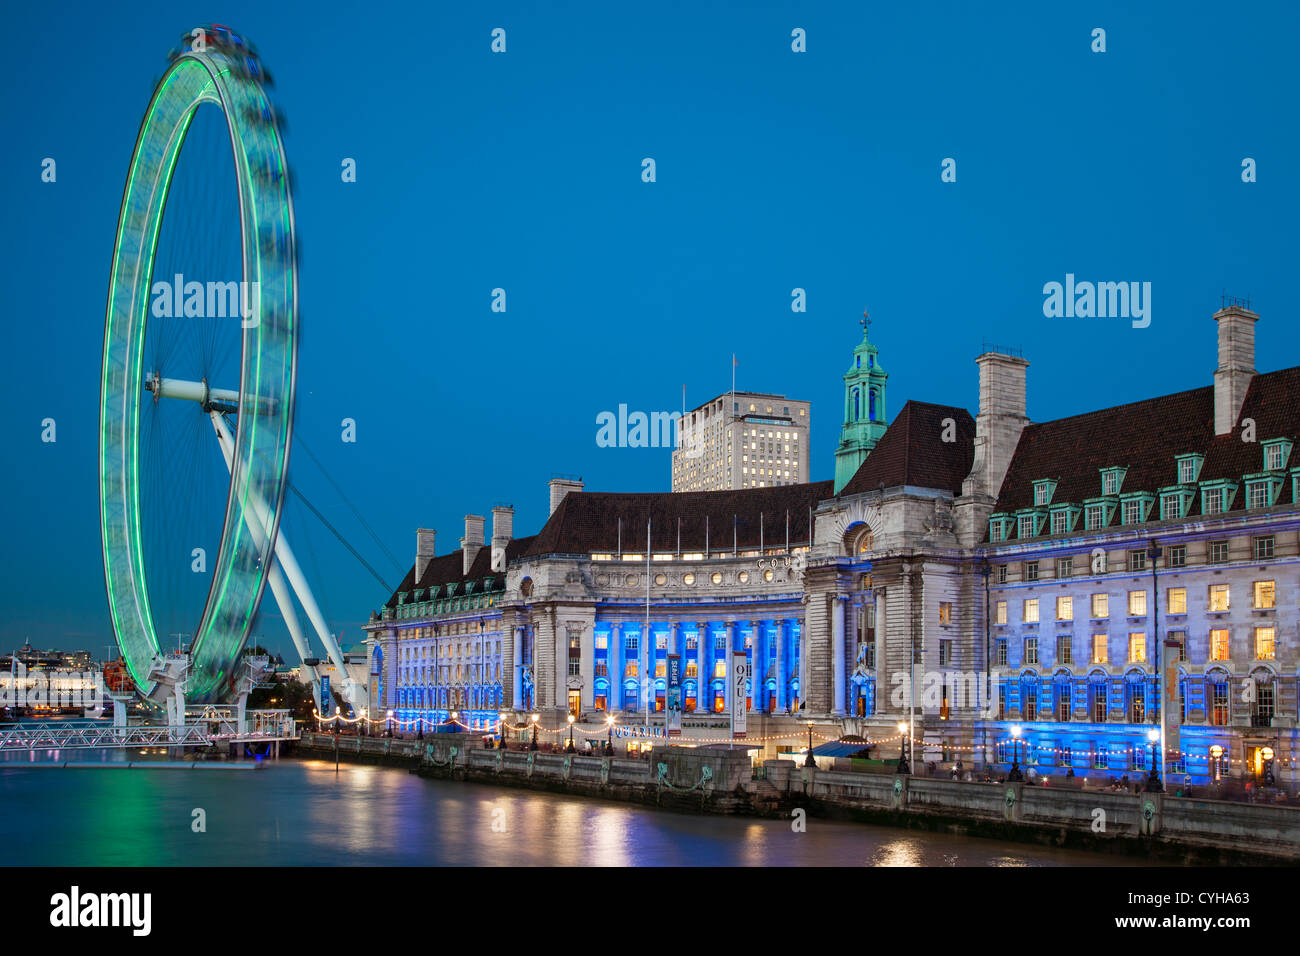 Crépuscule au London Eye le long de la rivière Thames, London England, UK Banque D'Images